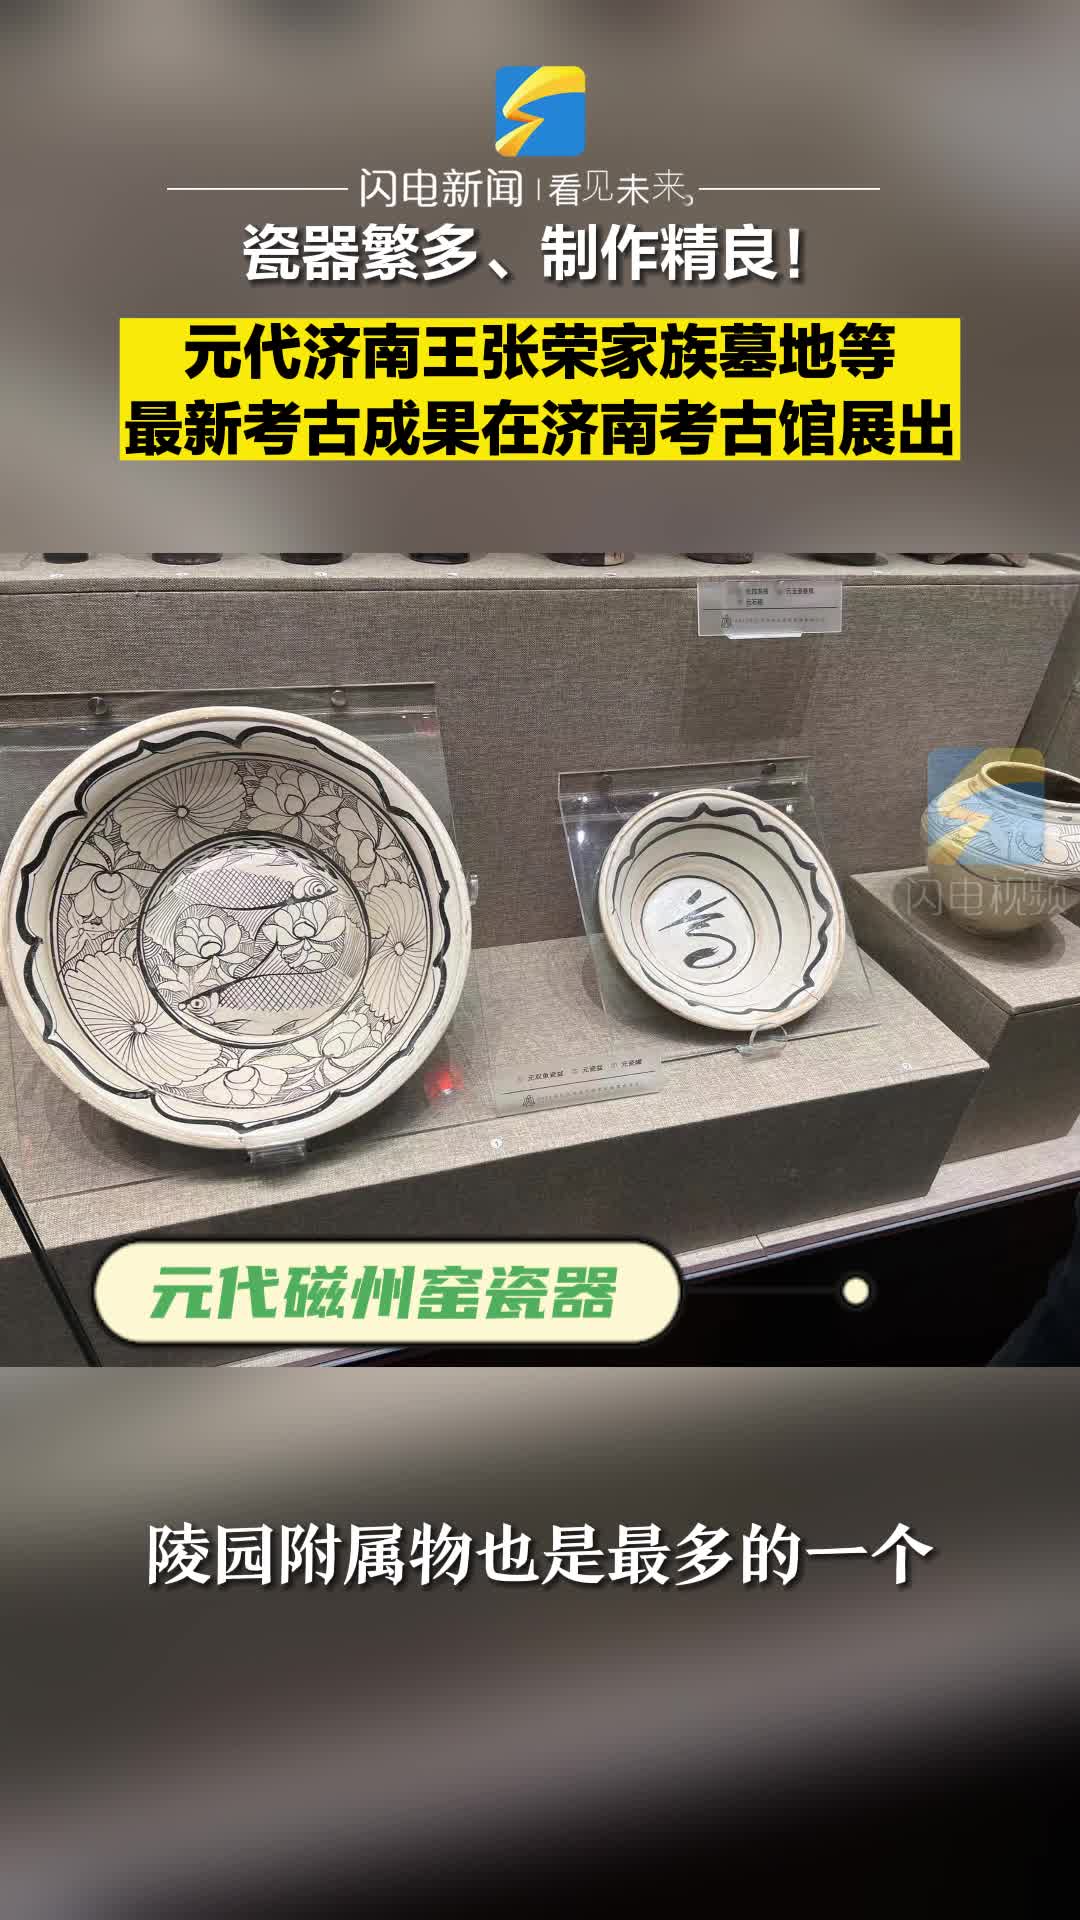 瓷器繁多、制作精良！元代济南王张荣家族墓地最新考古成果首次展出